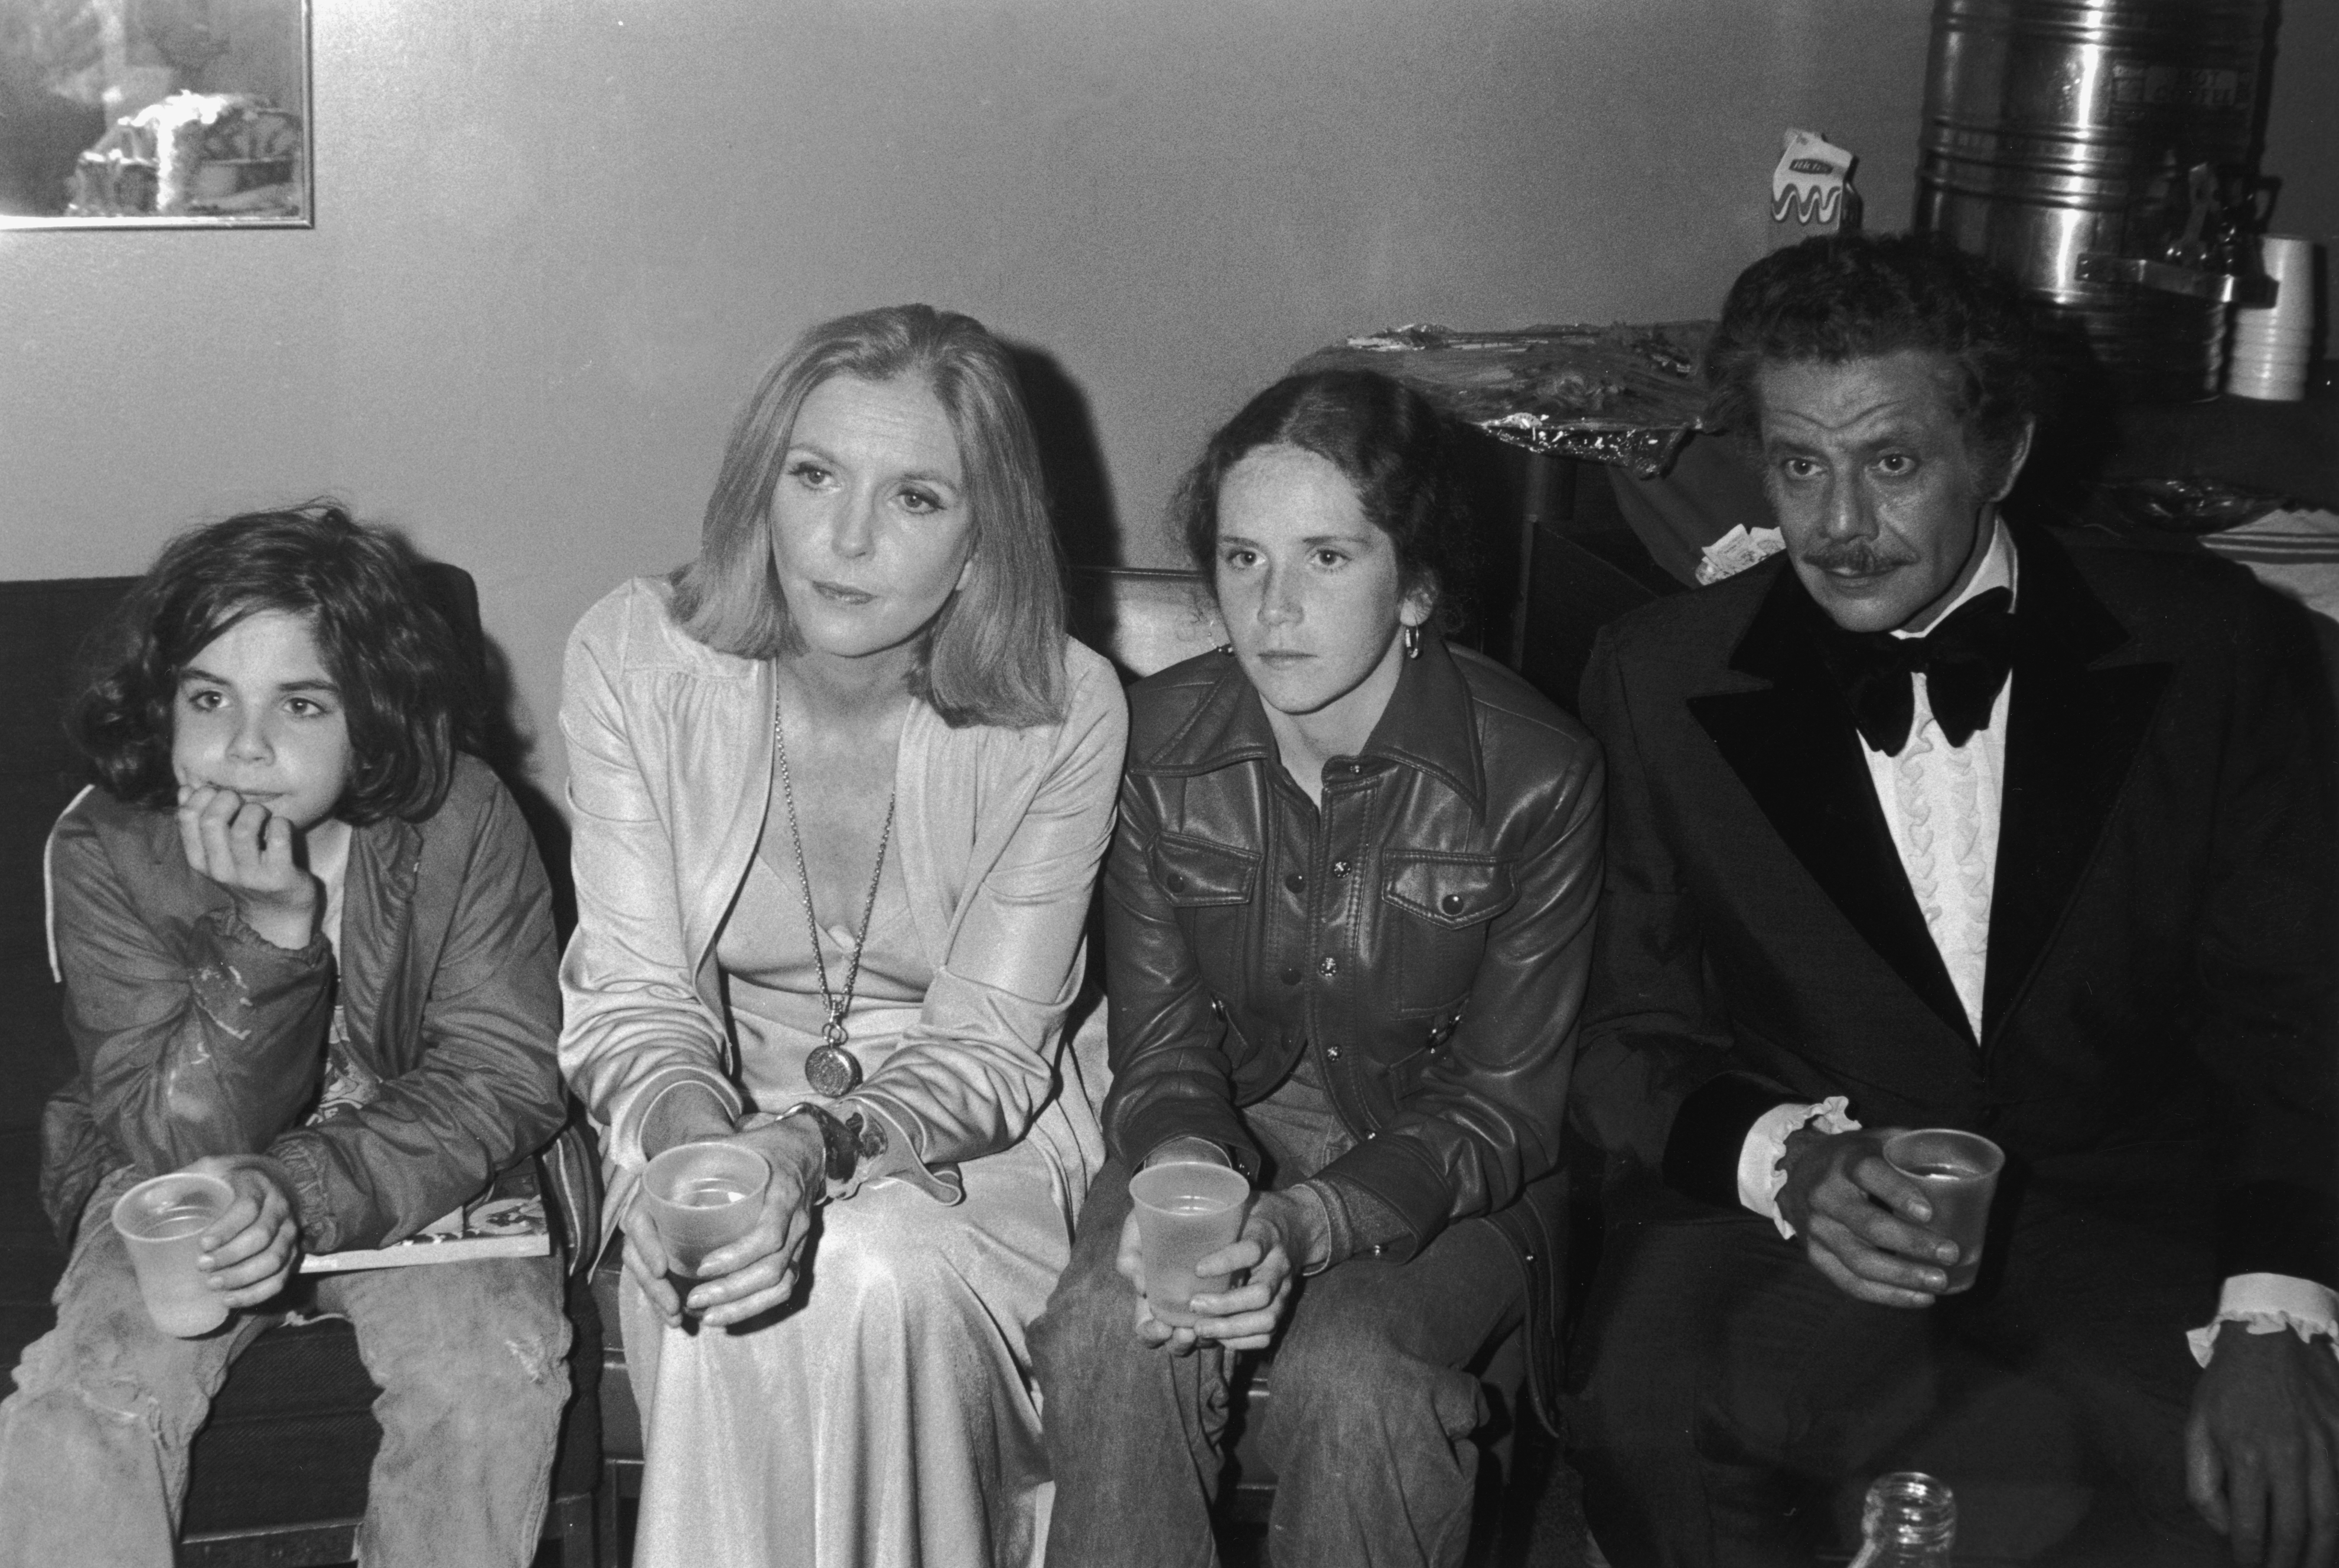 Ben Stiller, Ann Meara, Amy Stiller et Jerry Stiller photographiés en train de détourner le regard de l'appareil photo en 1976 | Source : Getty Images